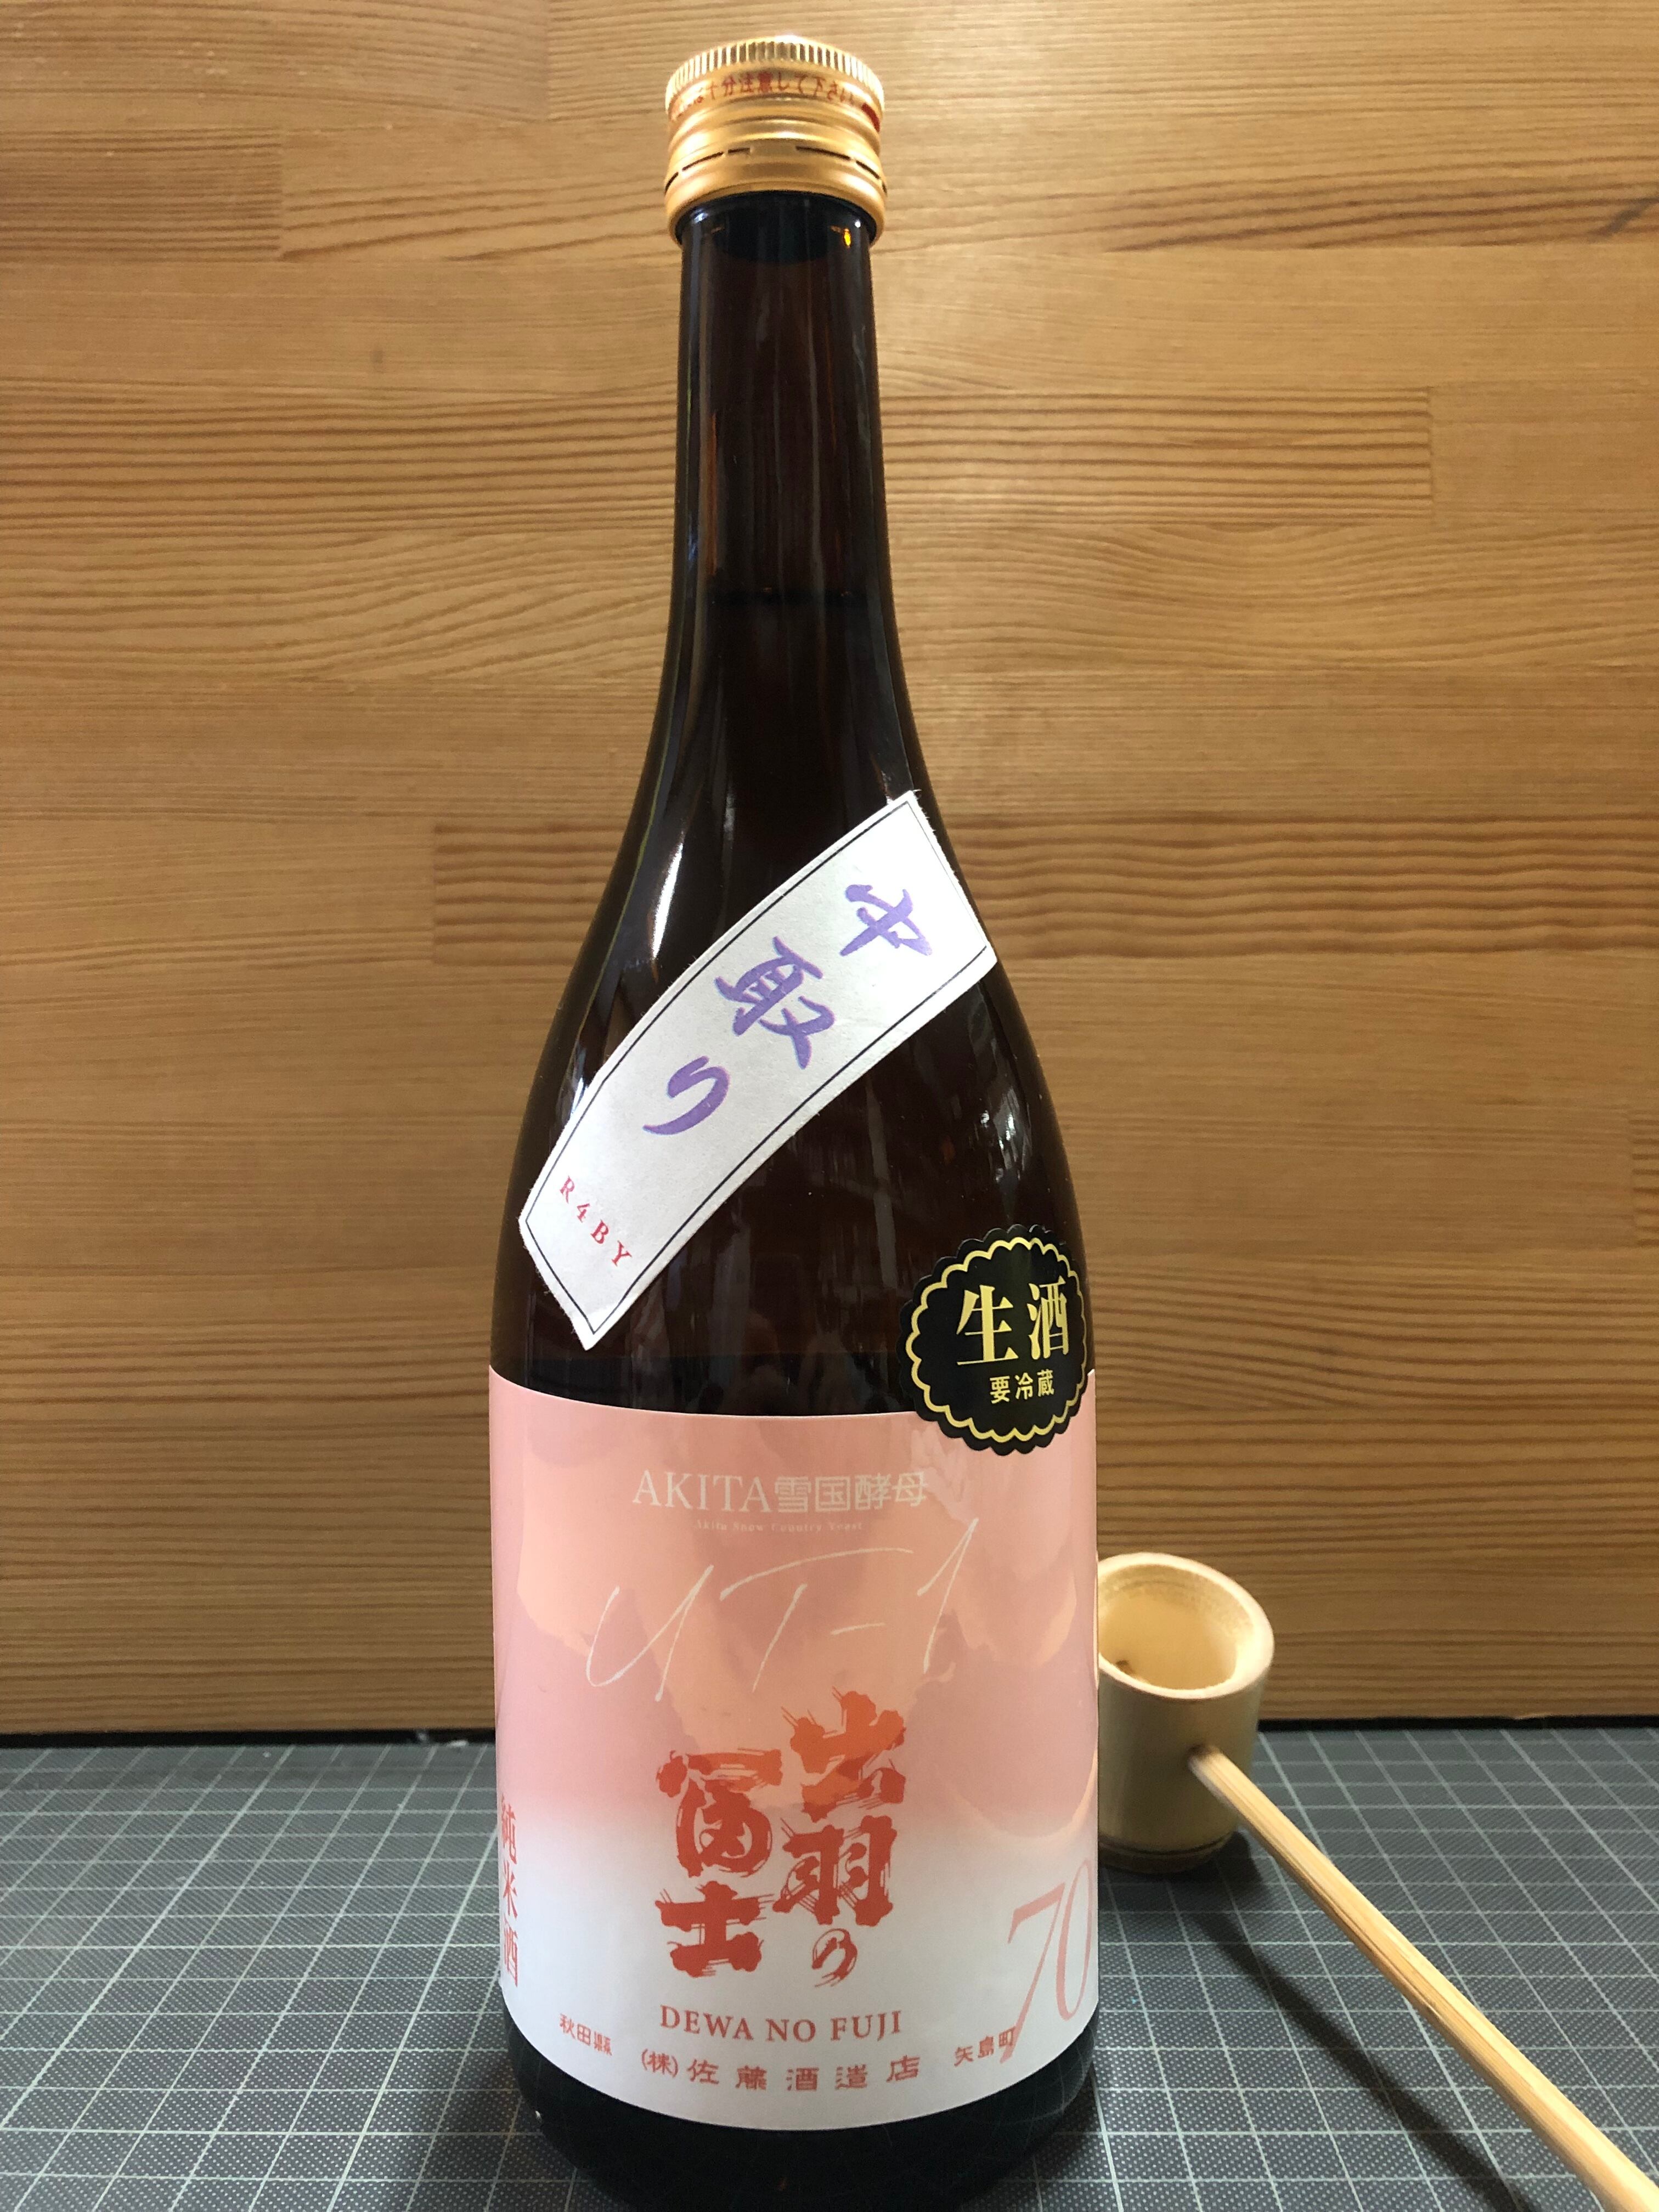 超熱 日本酒 太平山 天巧 純米大吟醸 720ml 秋田県 小玉醸造